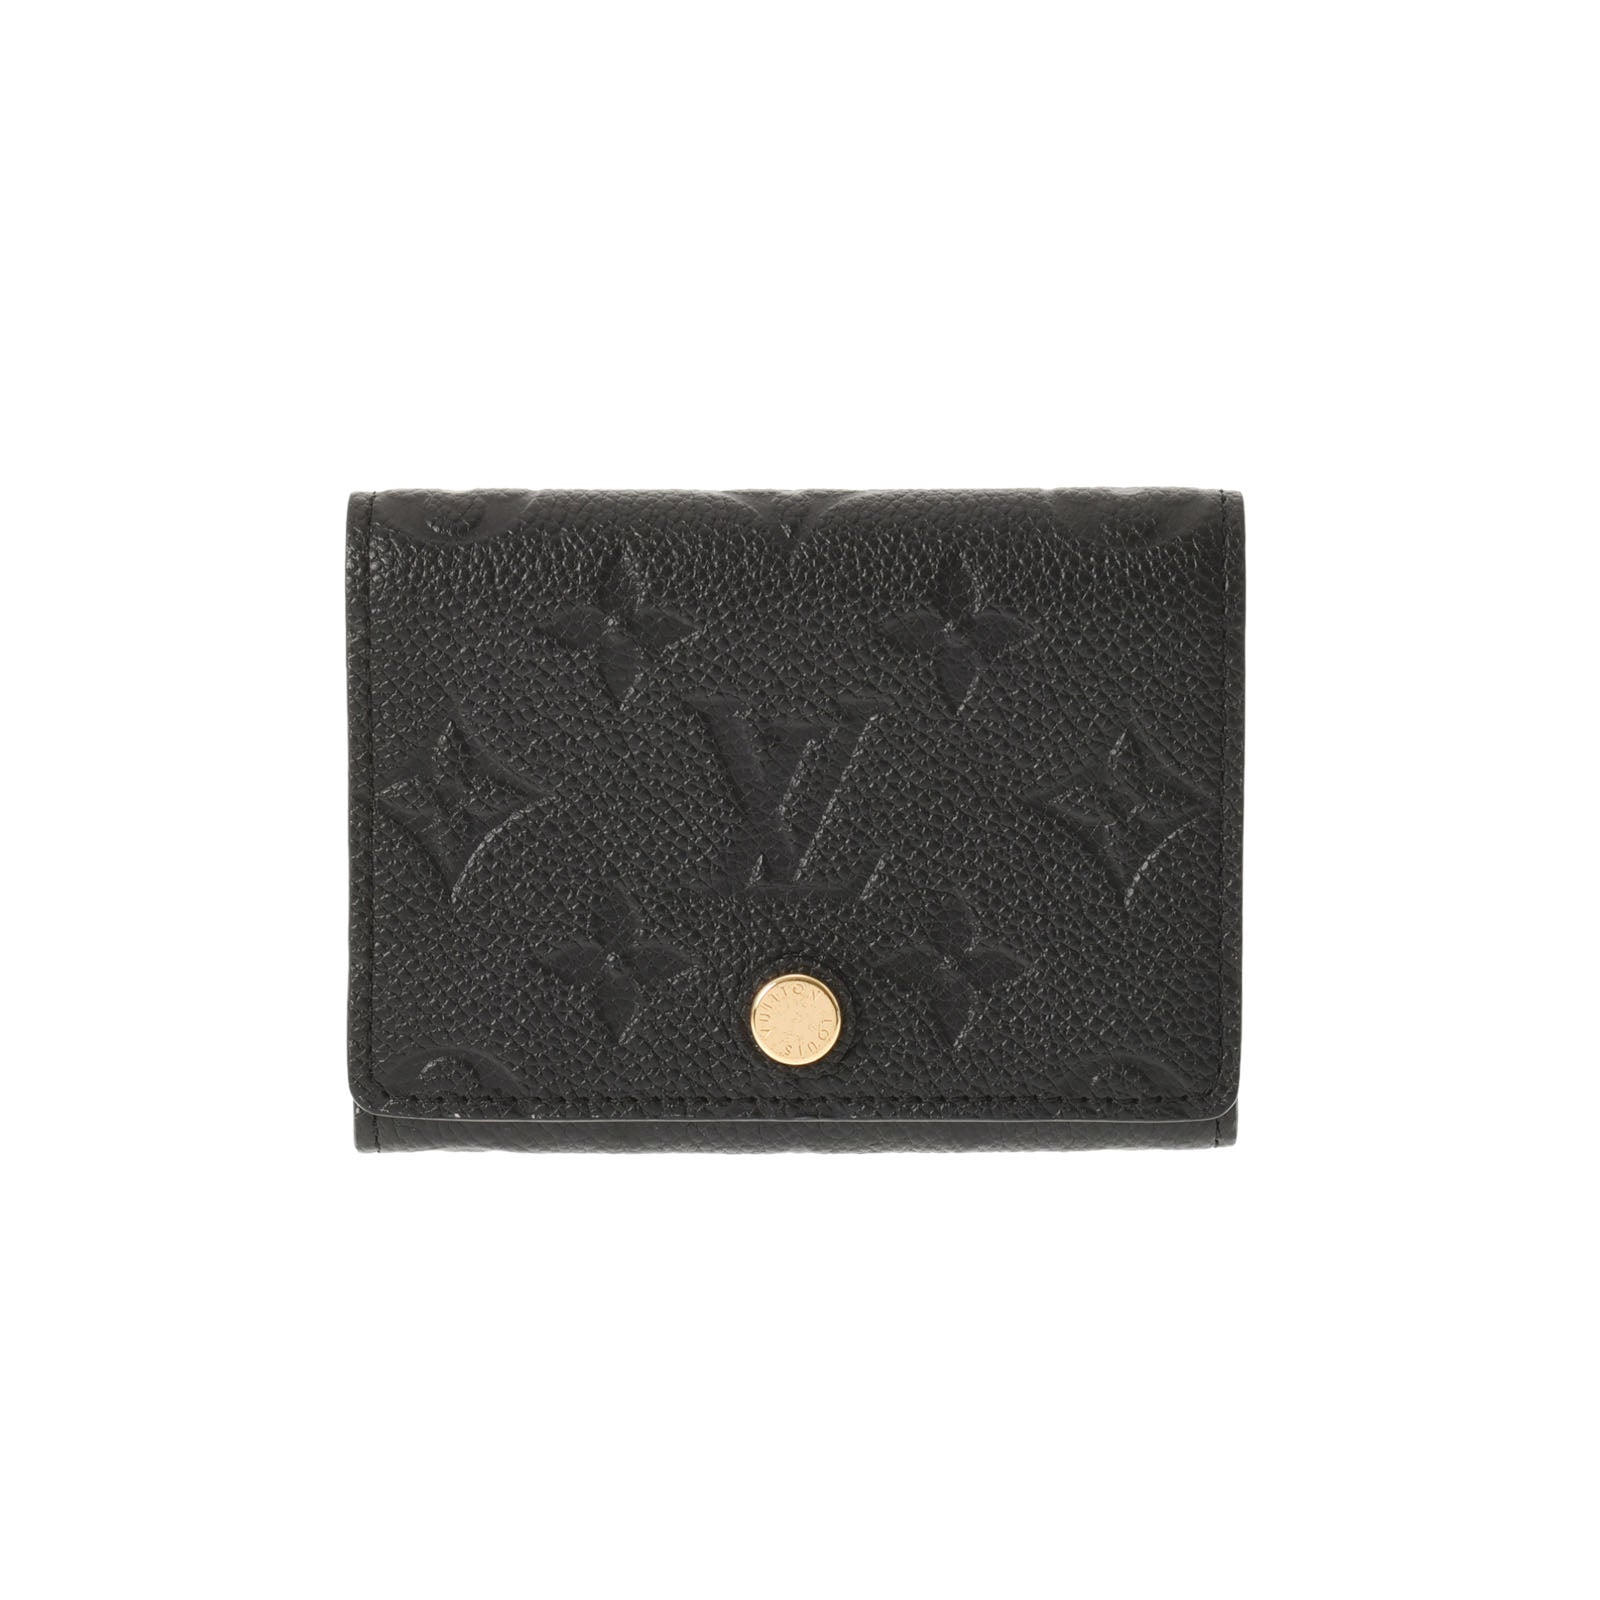 Louis Vuitton MONOGRAM EMPREINTE Business card holder (M58456) in